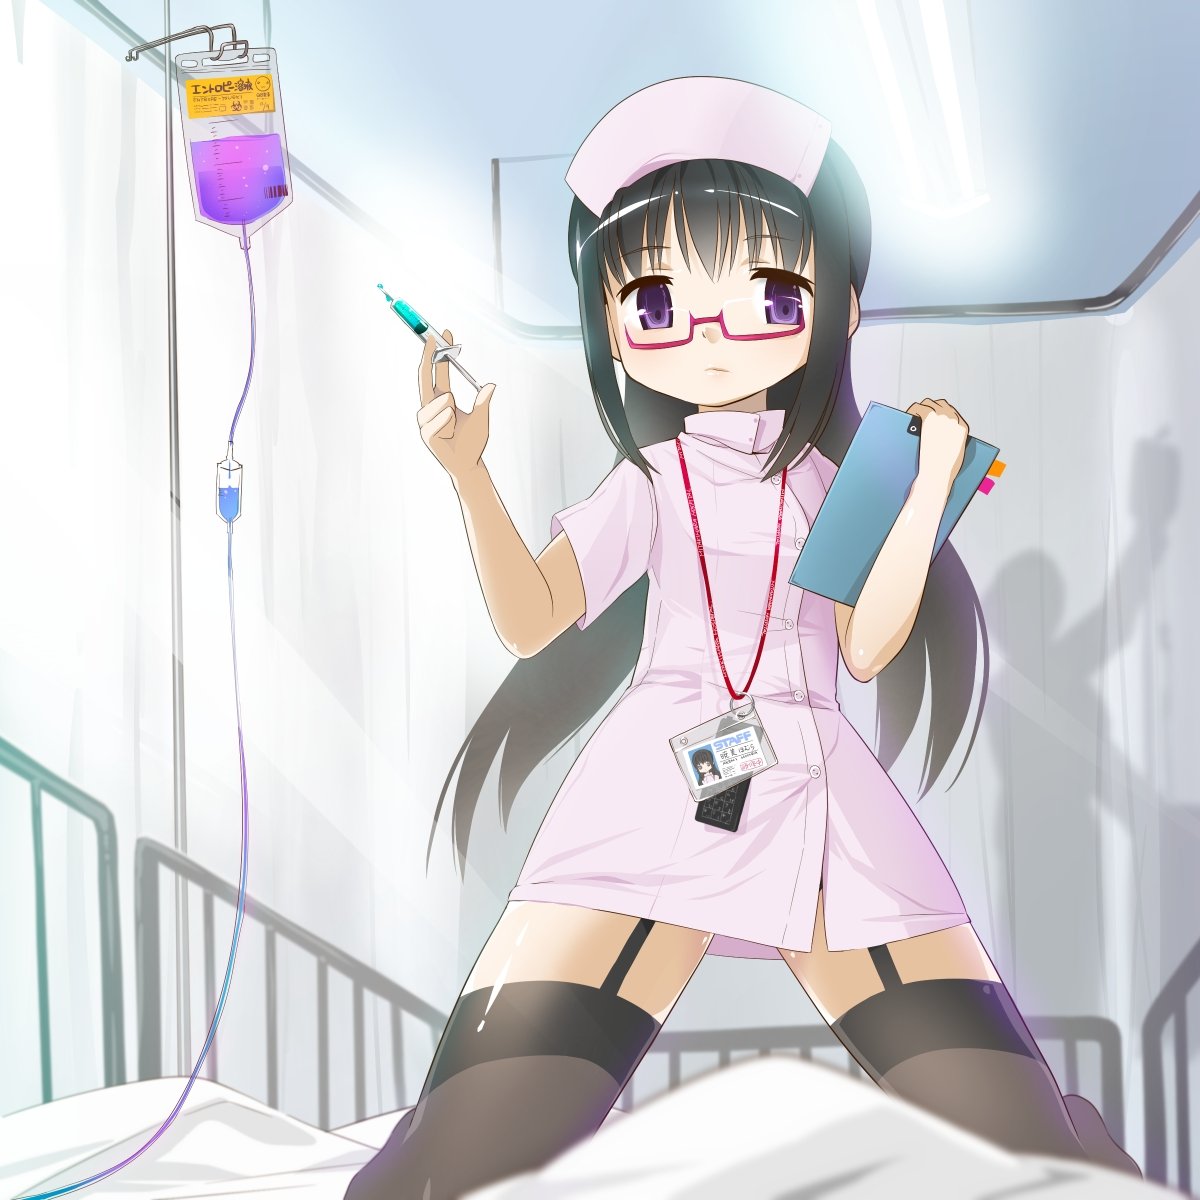 Похотливая медсестра показала свою киску на гинекол. кресле